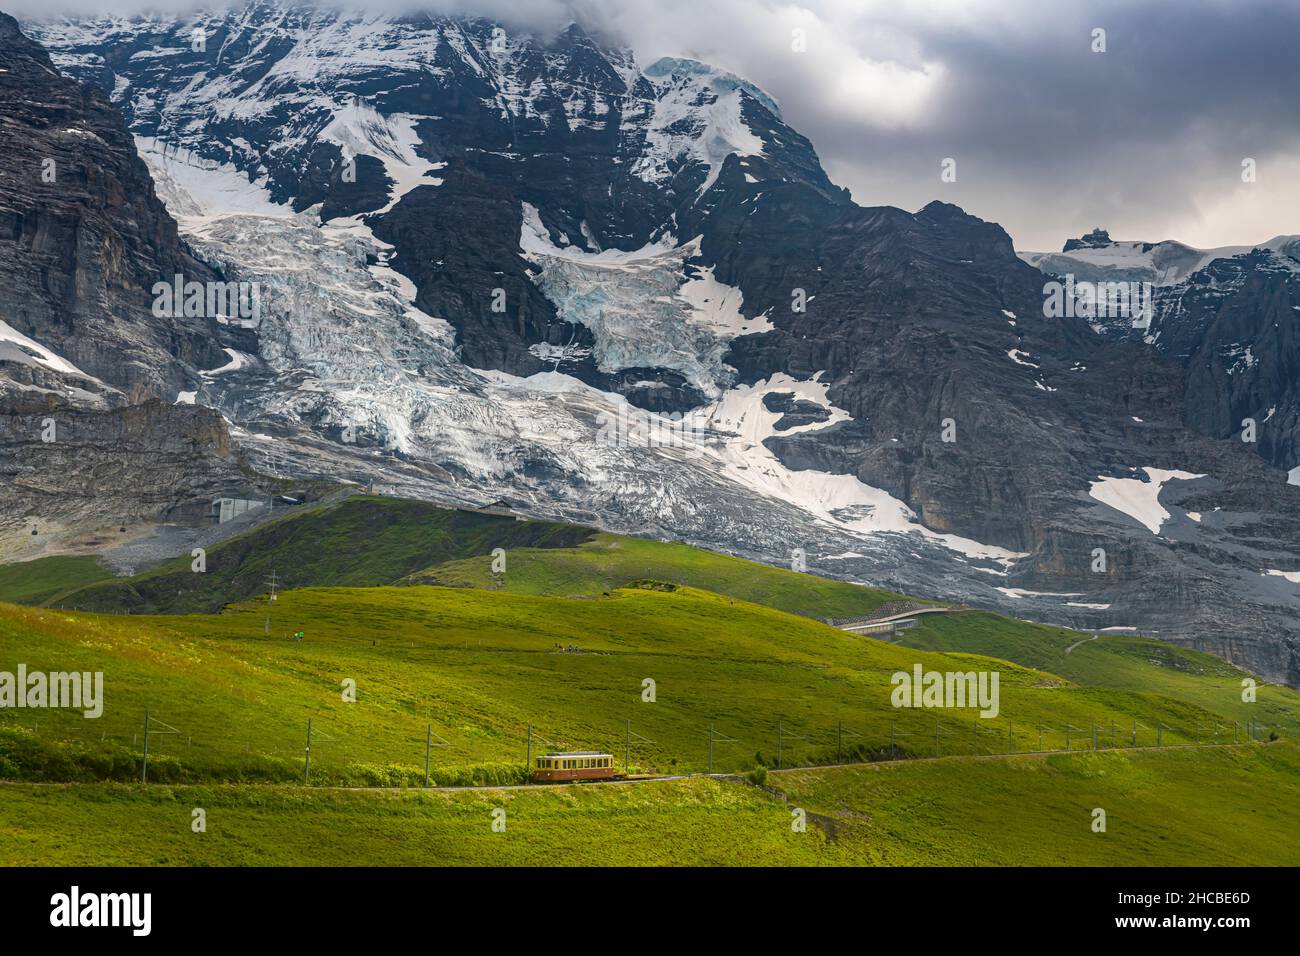 Jungfrau Railway prima del maestoso Eiger North Face Foto Stock